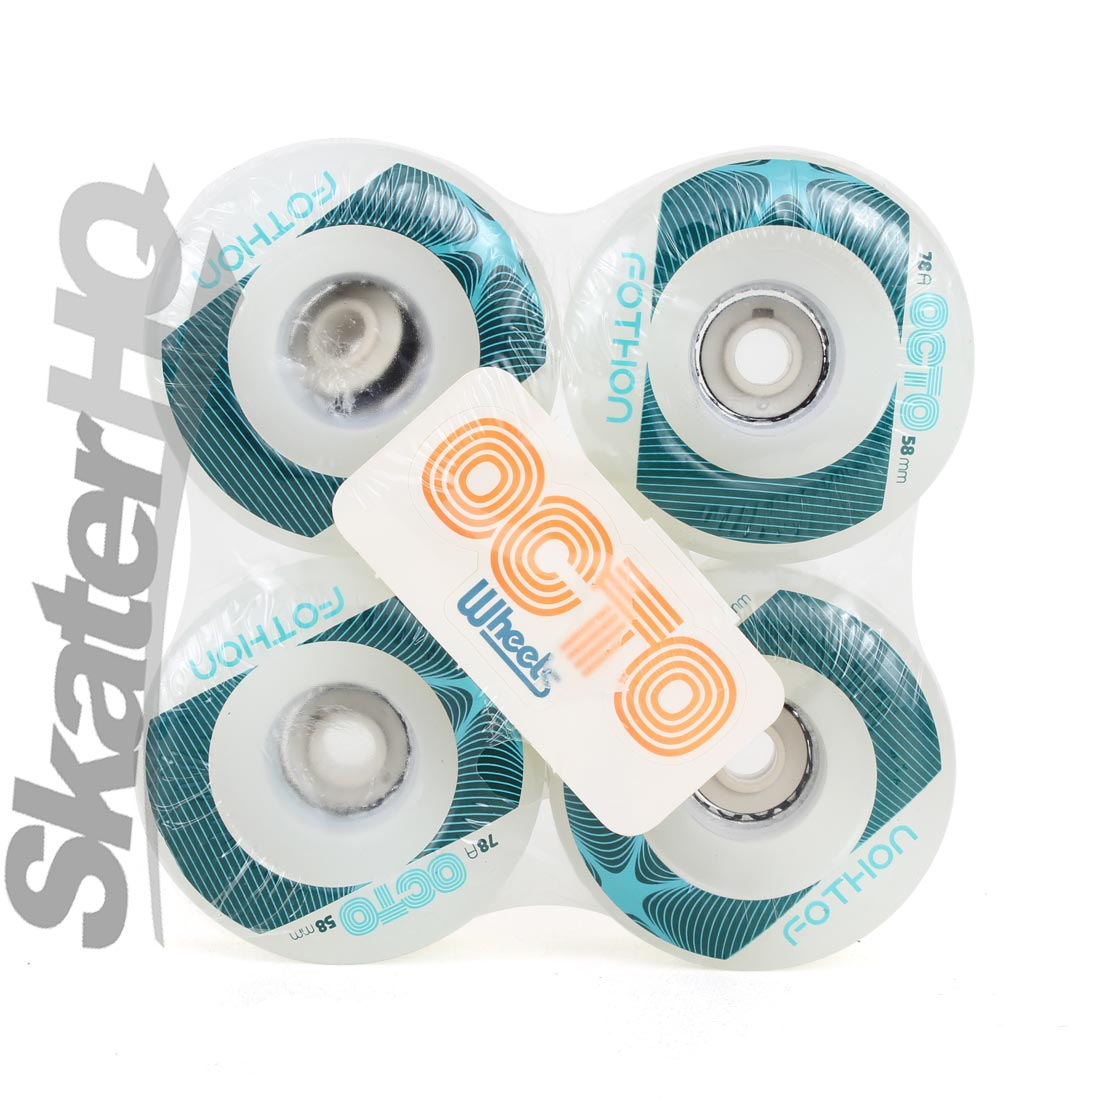 Octo Fothon 58mm/78a LED 4pk - White Roller Skate Wheels